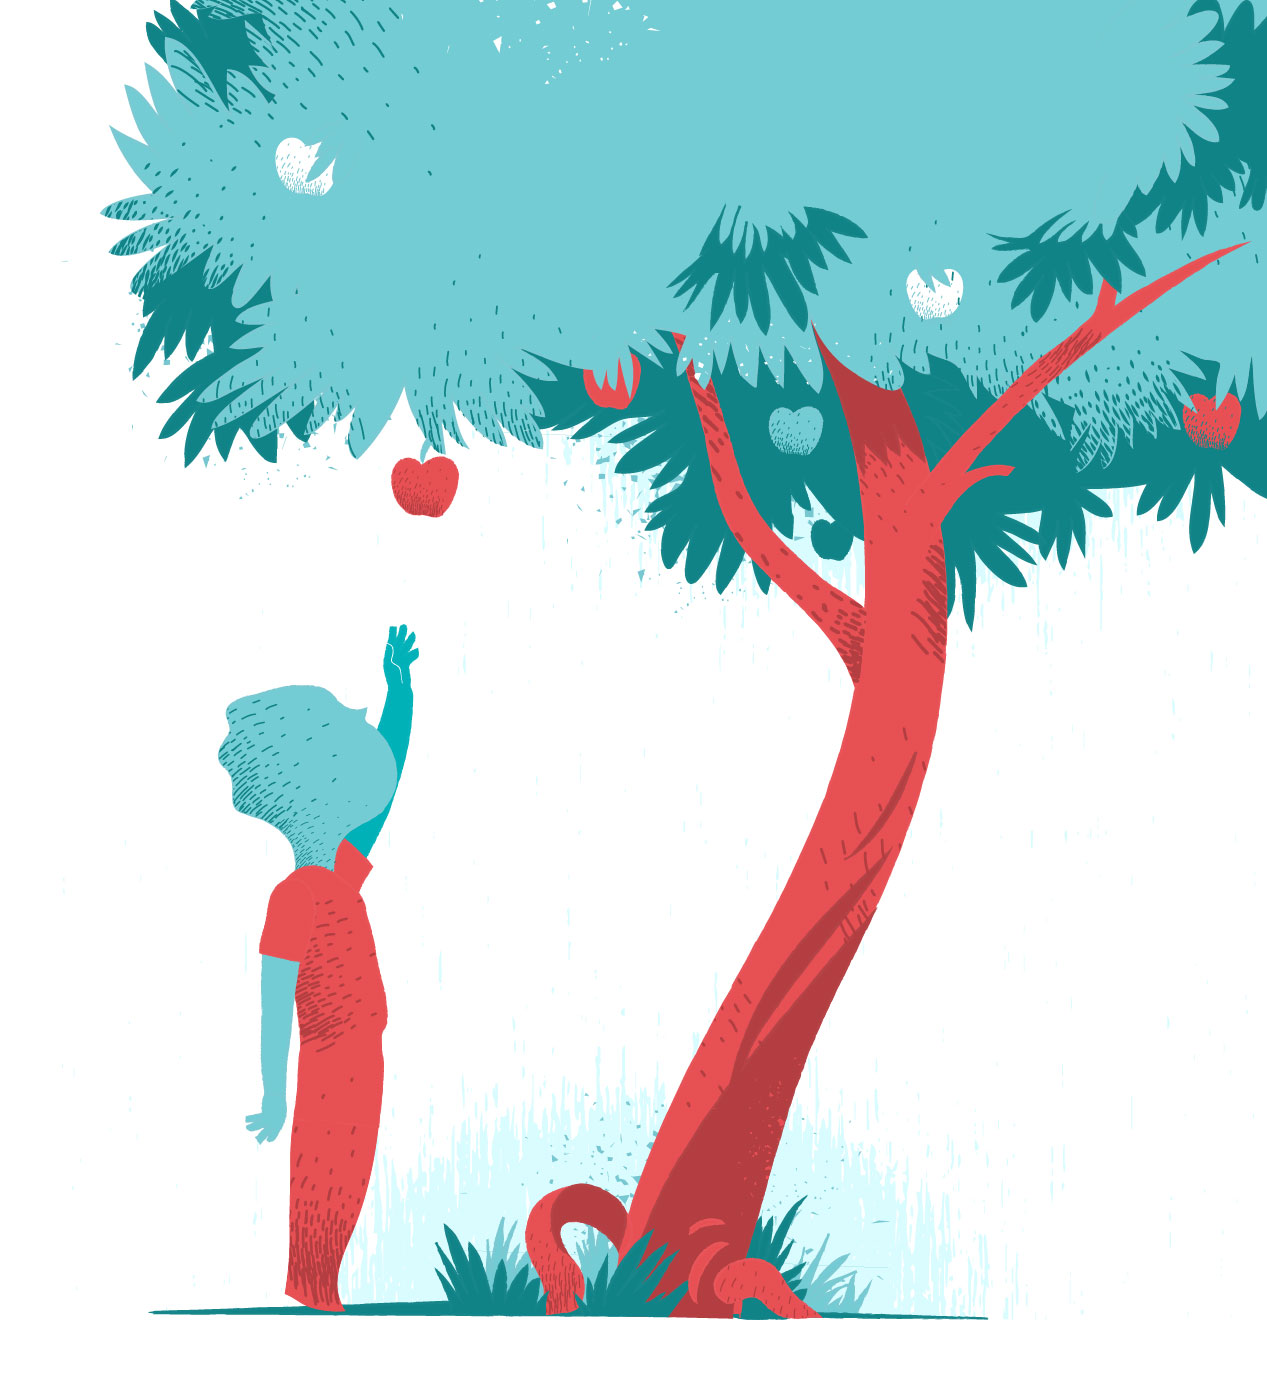 Apple Tree vector art illustration by Hurca.com